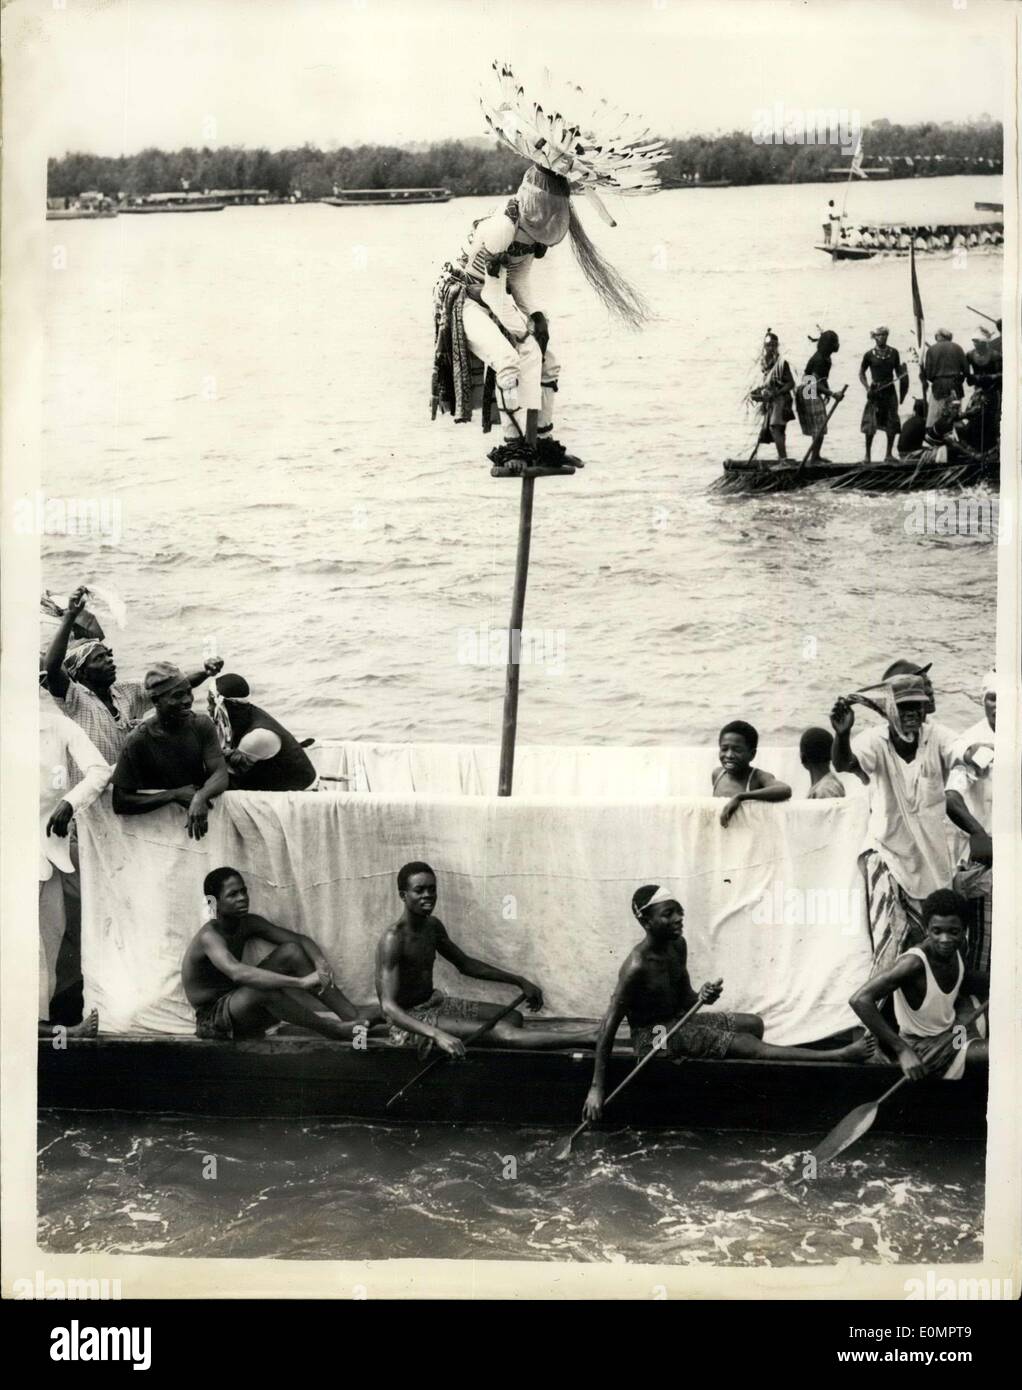 13. Februar 1956 - die königliche nigerianischen Tour... Ju-Ju-Mann klettert an die Spitze des Mastes. Keystone-Fotoshows:-ein Ju-Ju-Mann klettert an die Spitze Stockfoto